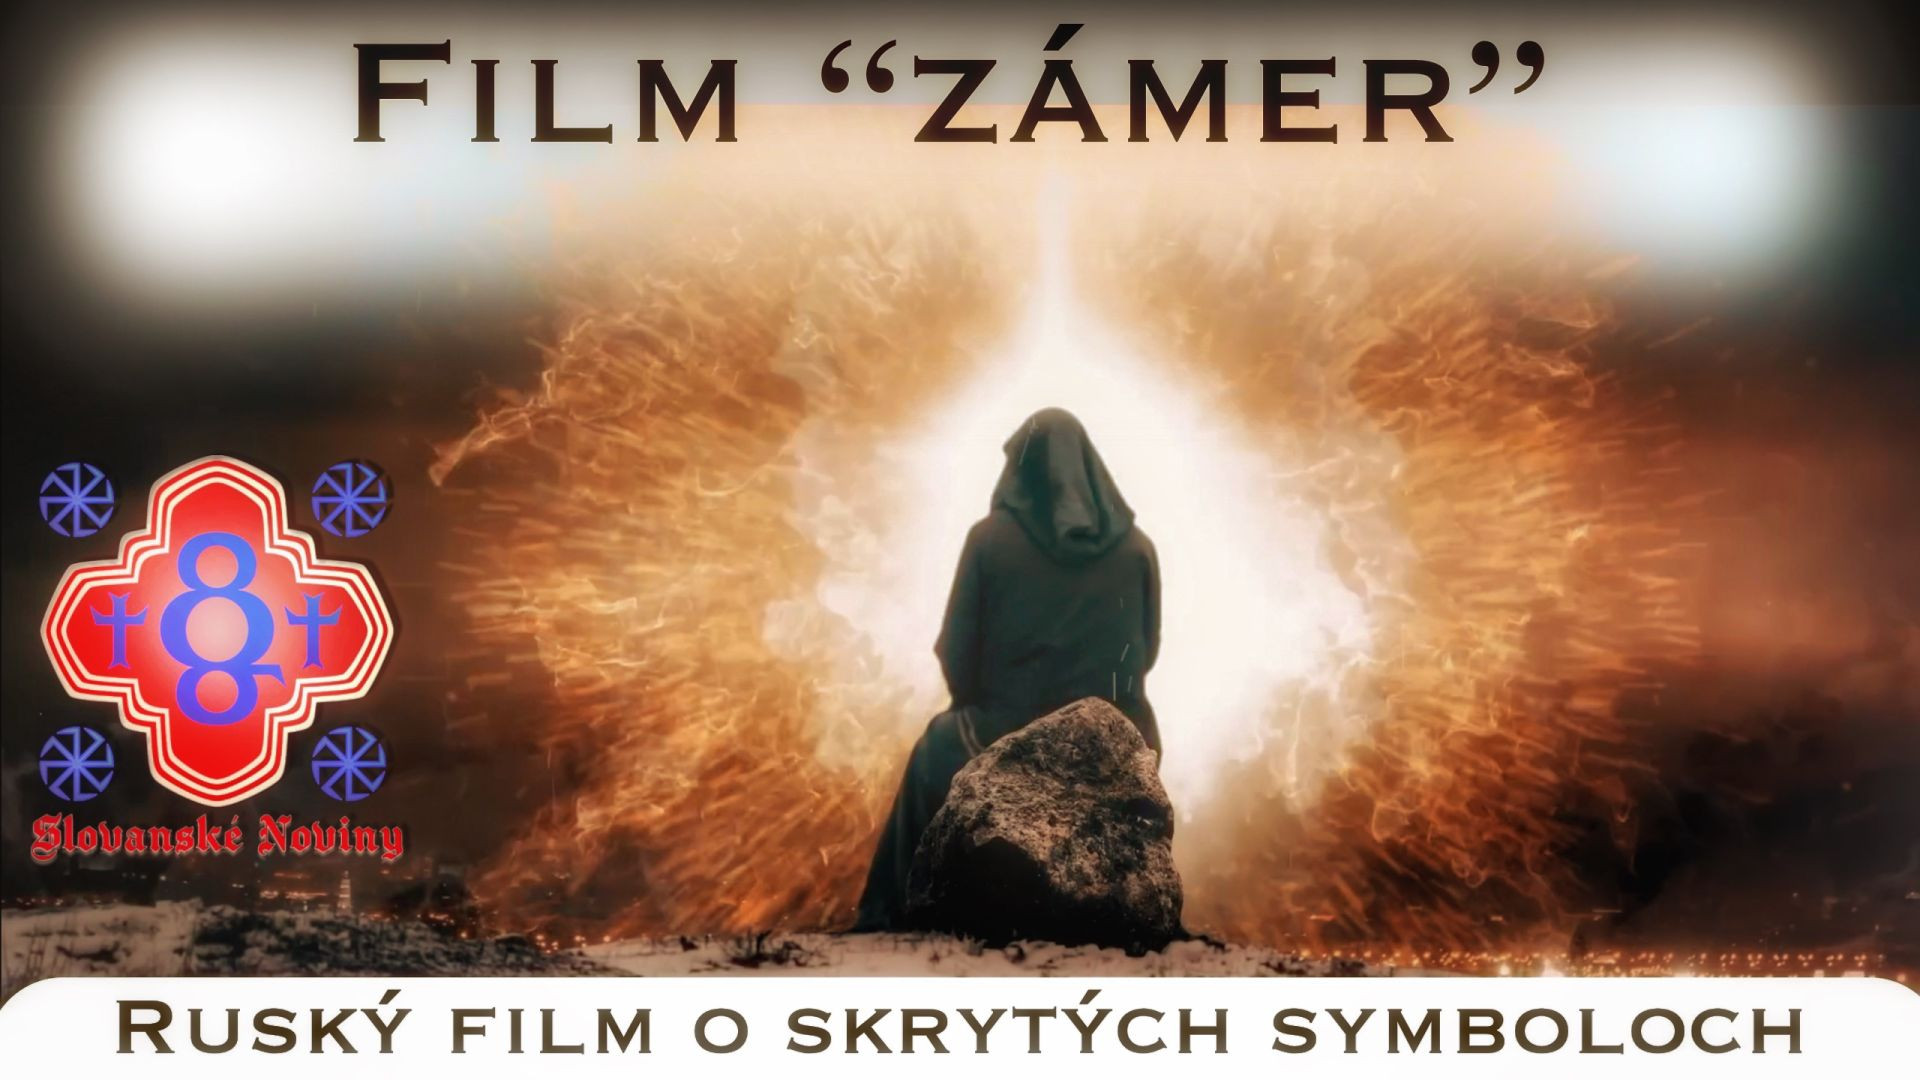 Film "ZÁMER" (2019) titulky SK,RUS,CZ,ENG,DE,IT,SRB,RO